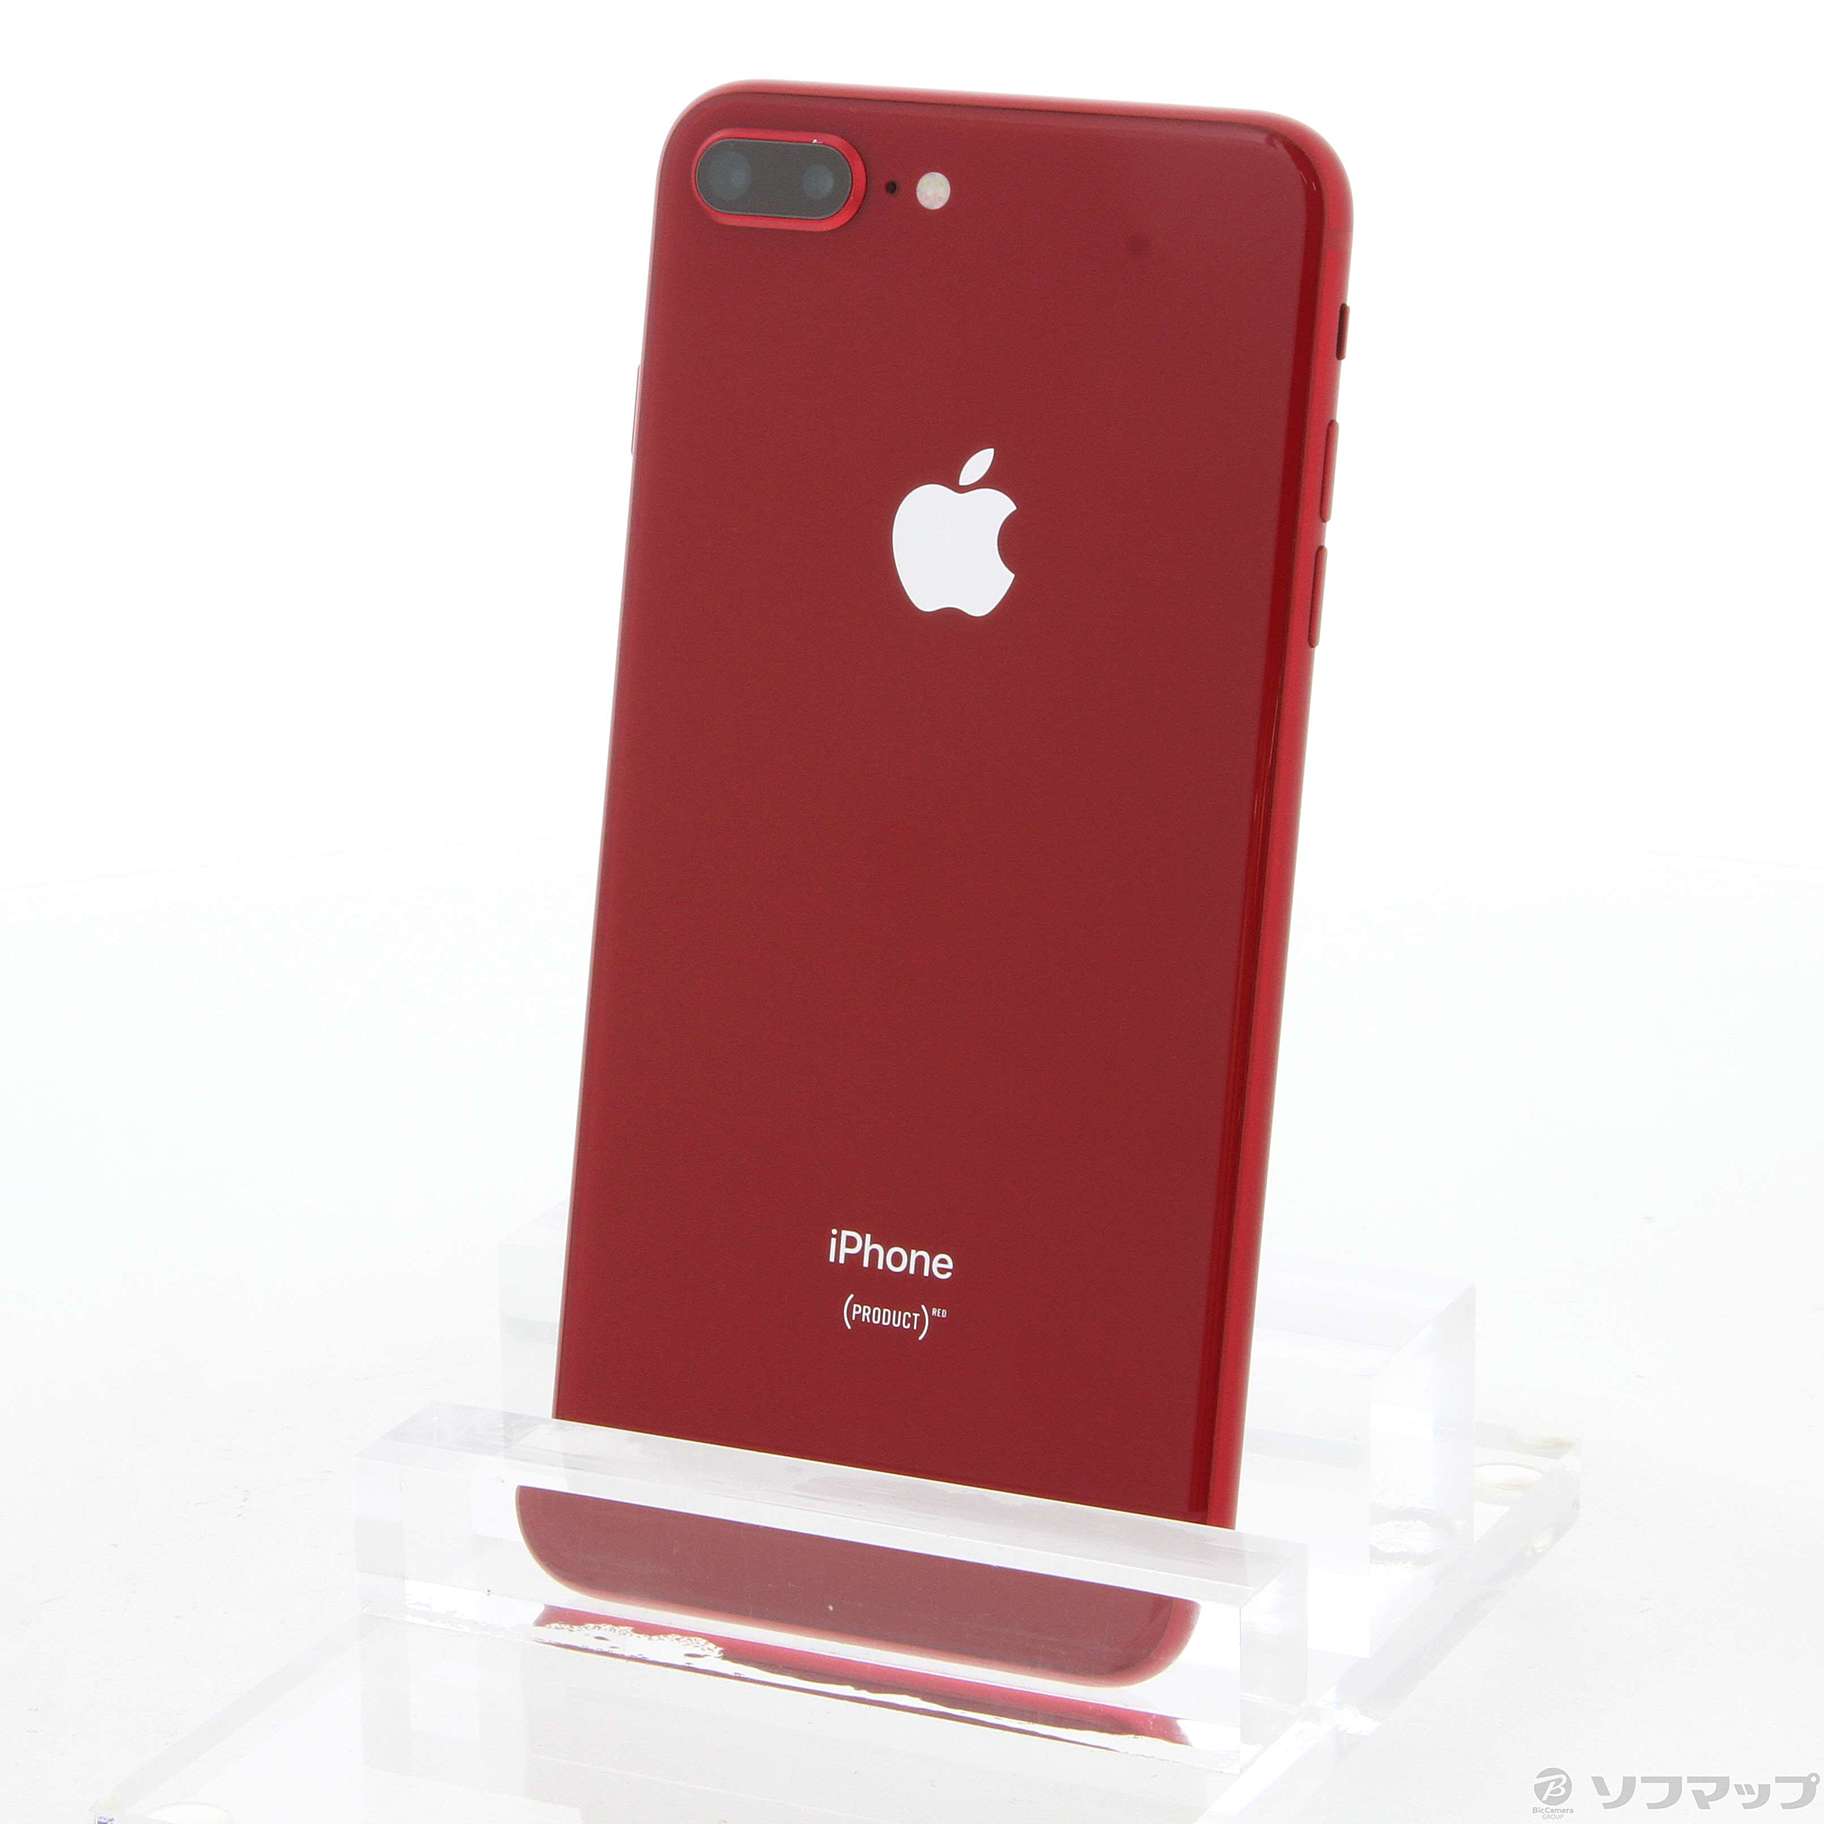 iPhone 8 Plus プロダクトレッド 64 GB SIMフリー64GBカラーレッド元